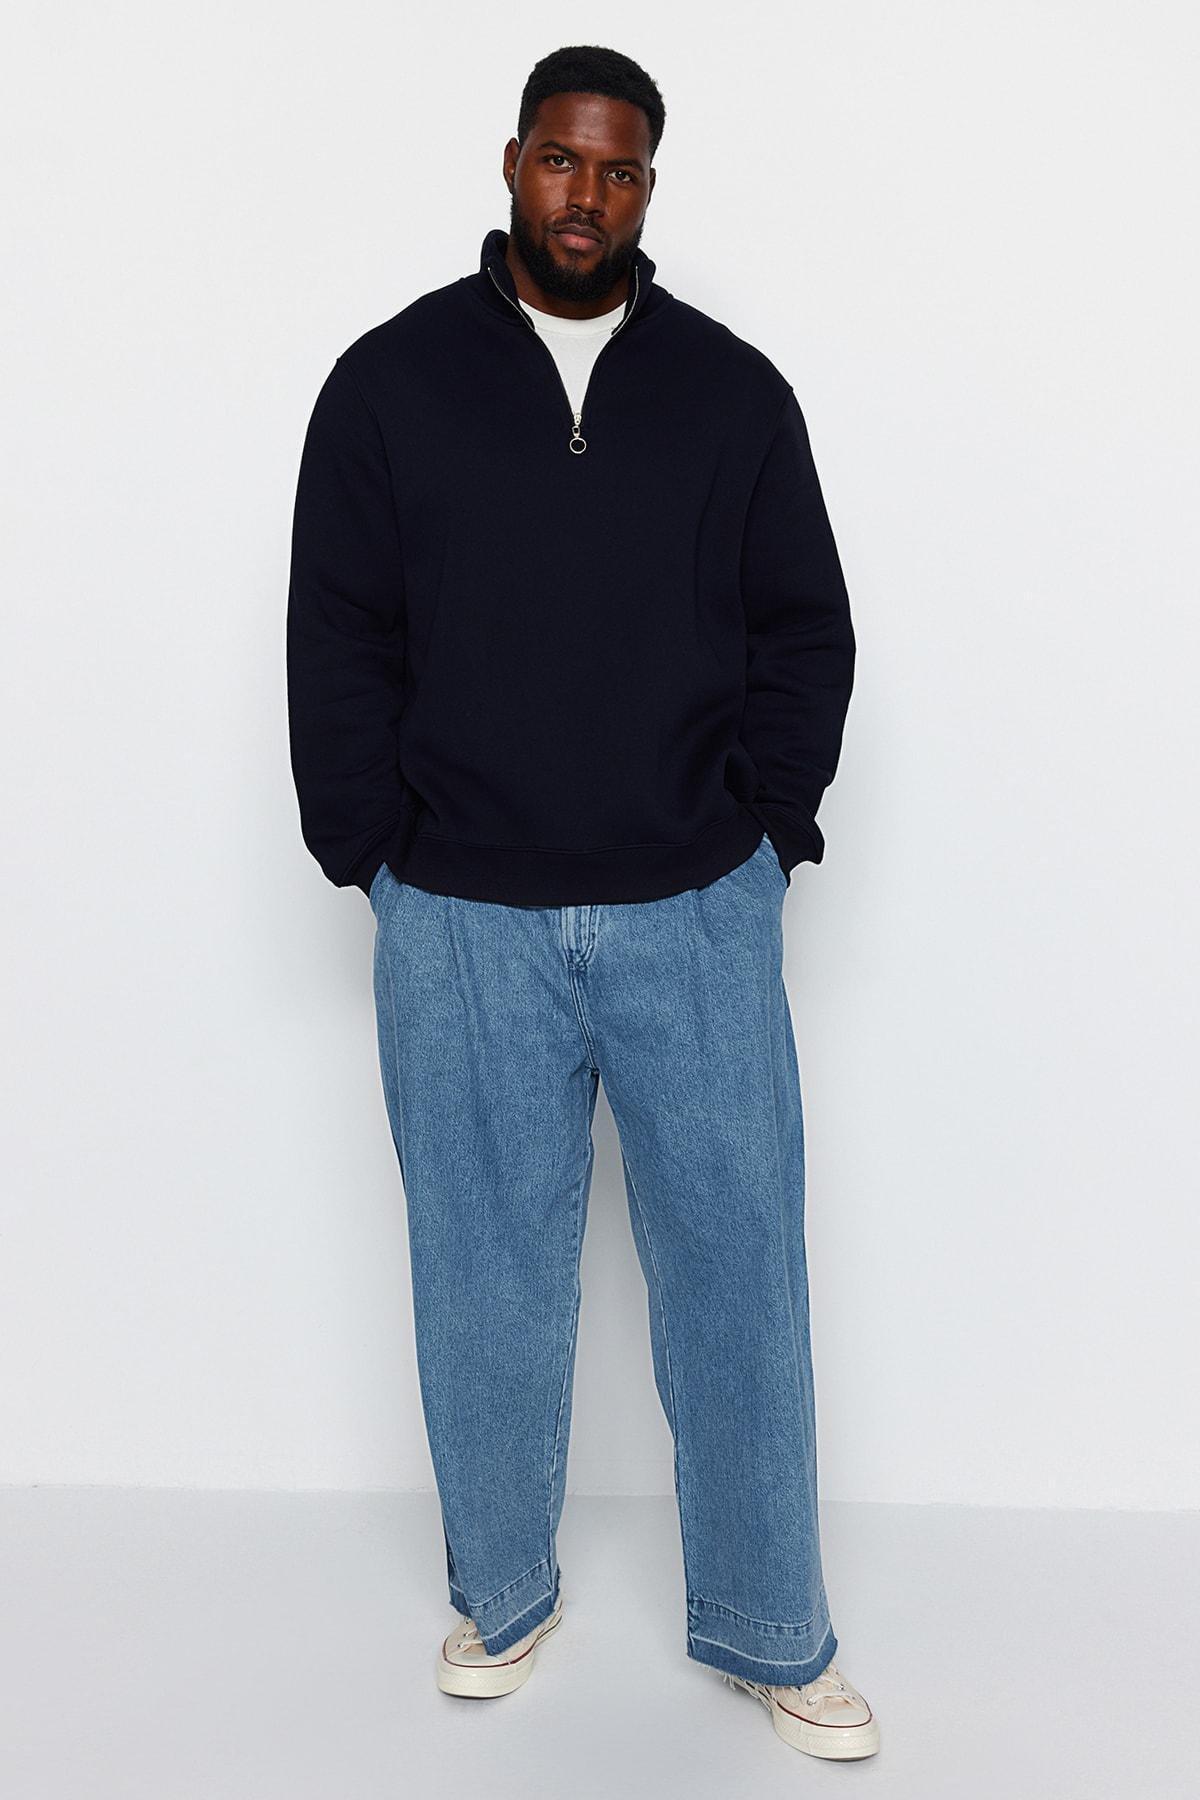 Trendyol - Navy Plus Size Zipper Fleece Sweatshirt